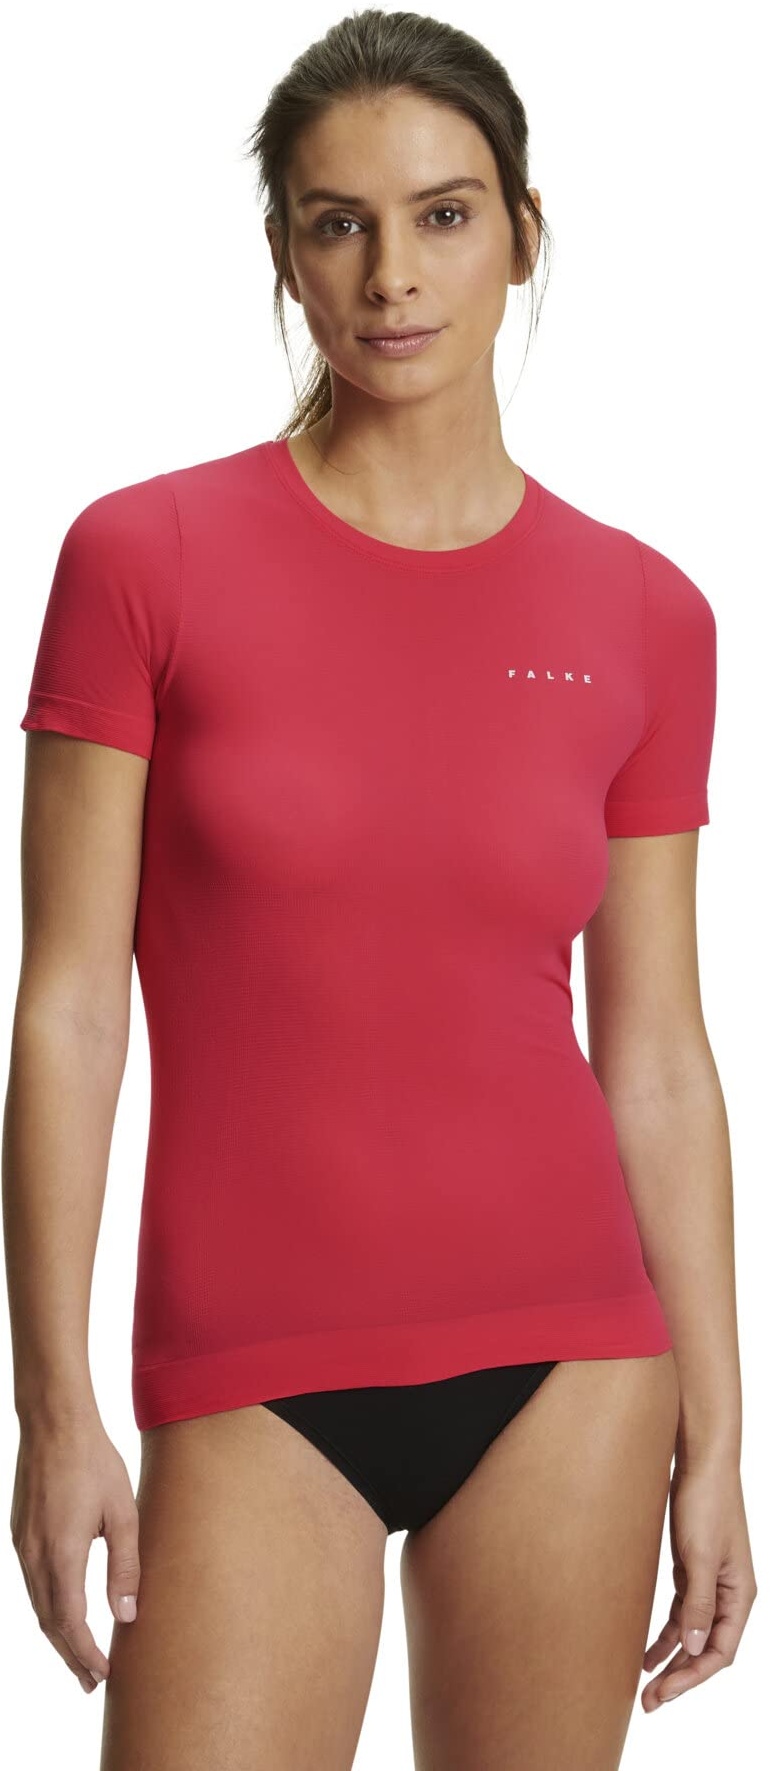 FALKE Damen Baselayer-Shirt Ultralight Cool Round Neck W S/S SH Funktionsmaterial Schnelltrocknend 1 Stück, Rot (Rose 8564), XS